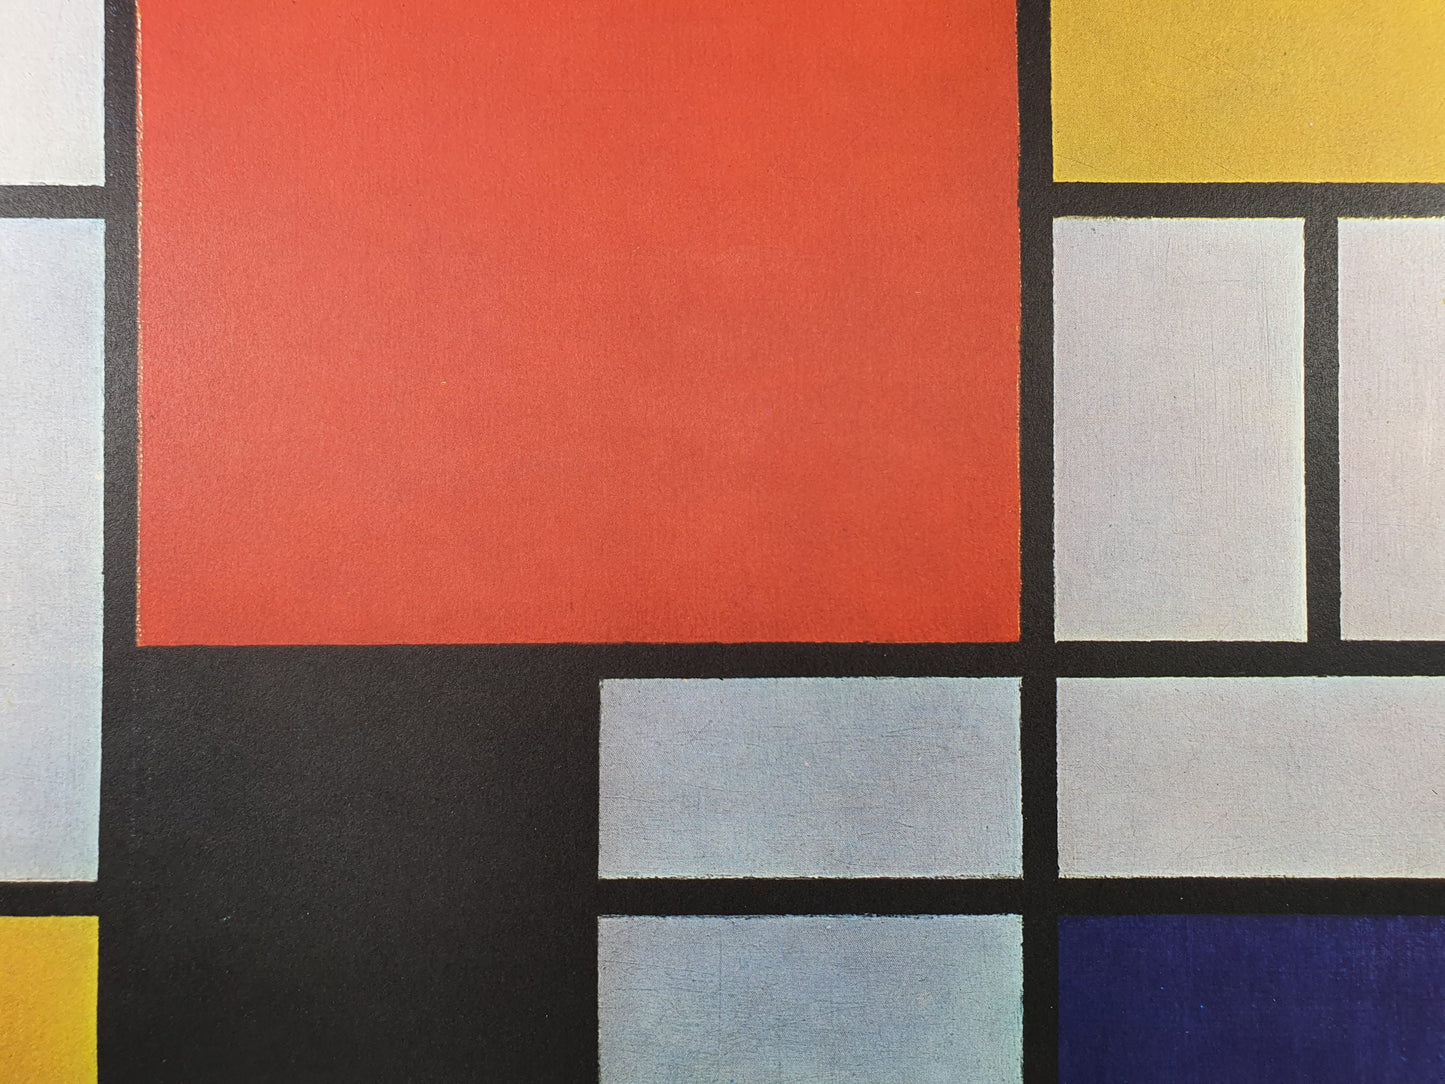 Piet Mondrian - Composition (1921)